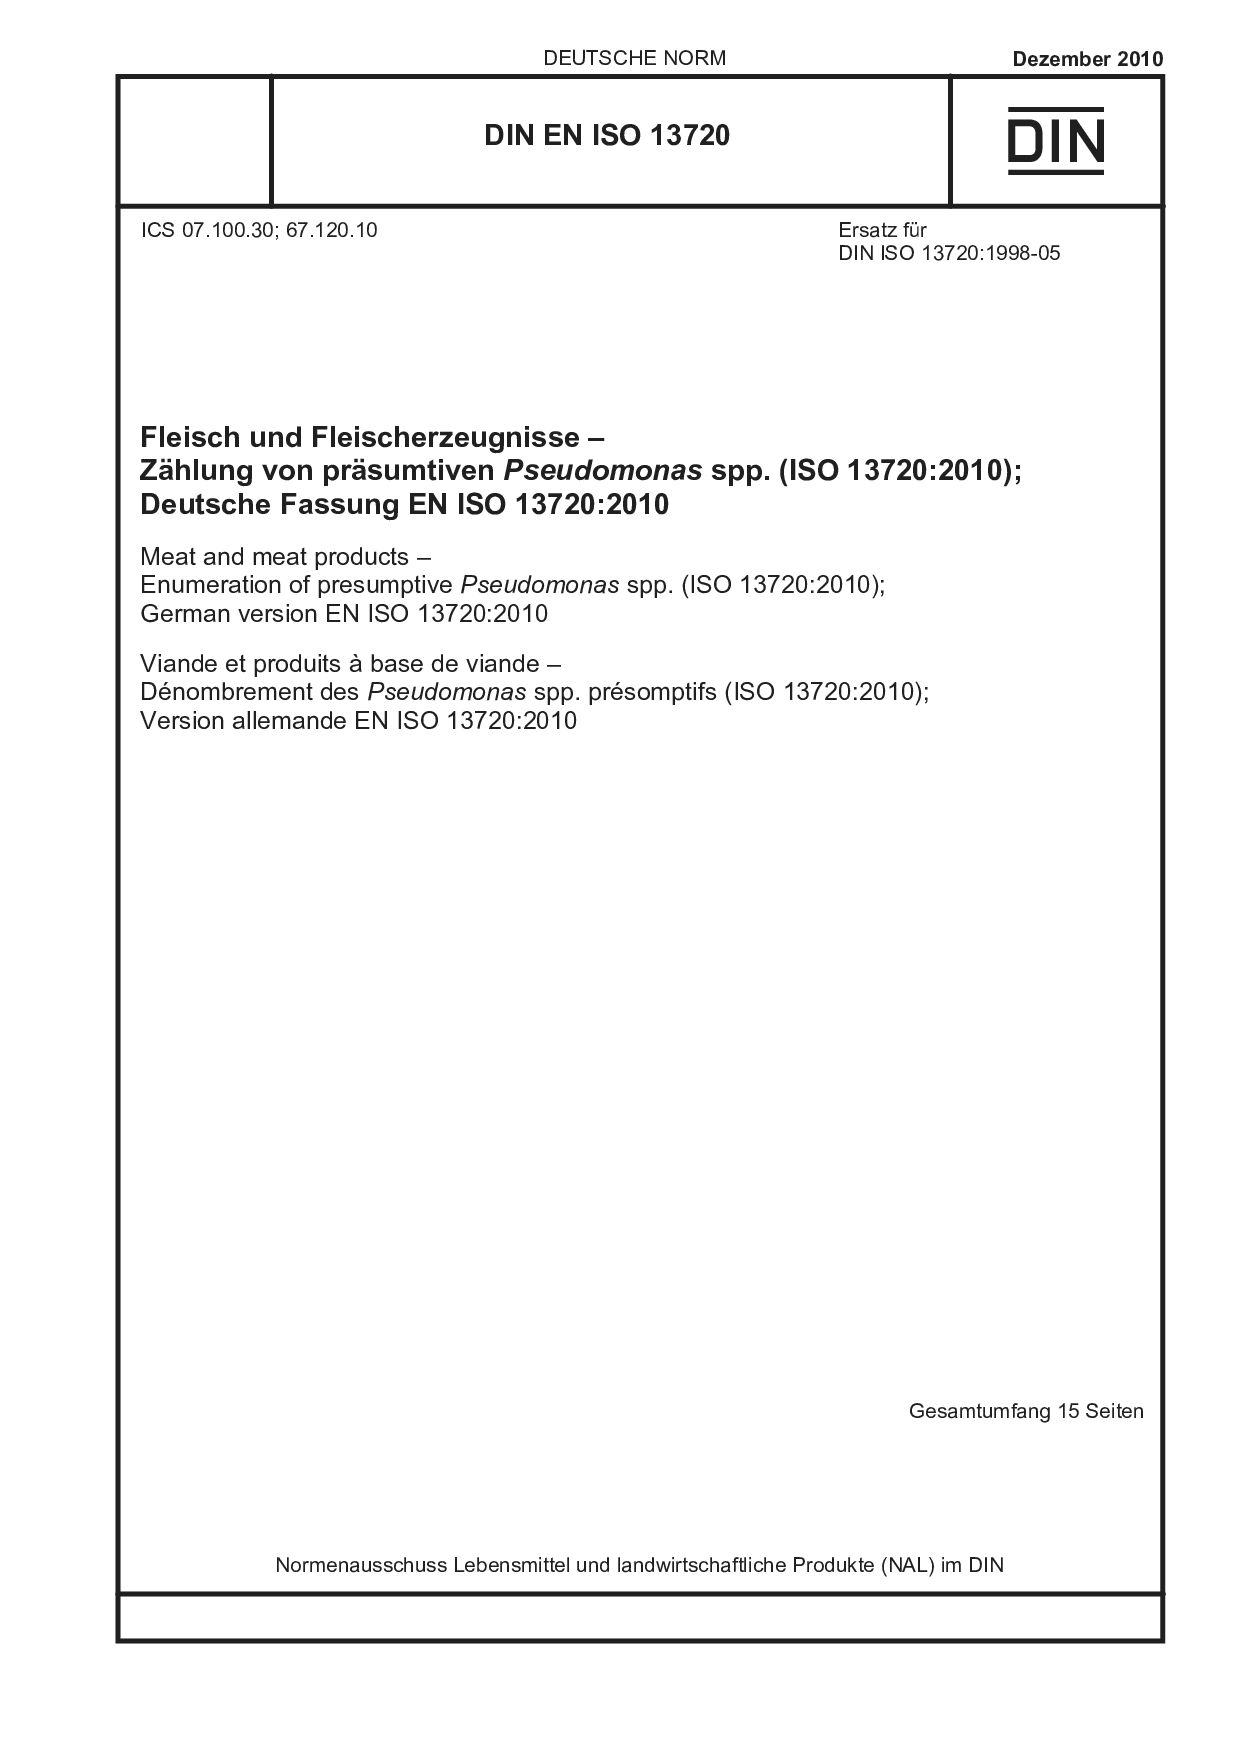 DIN EN ISO 13720:2010封面图